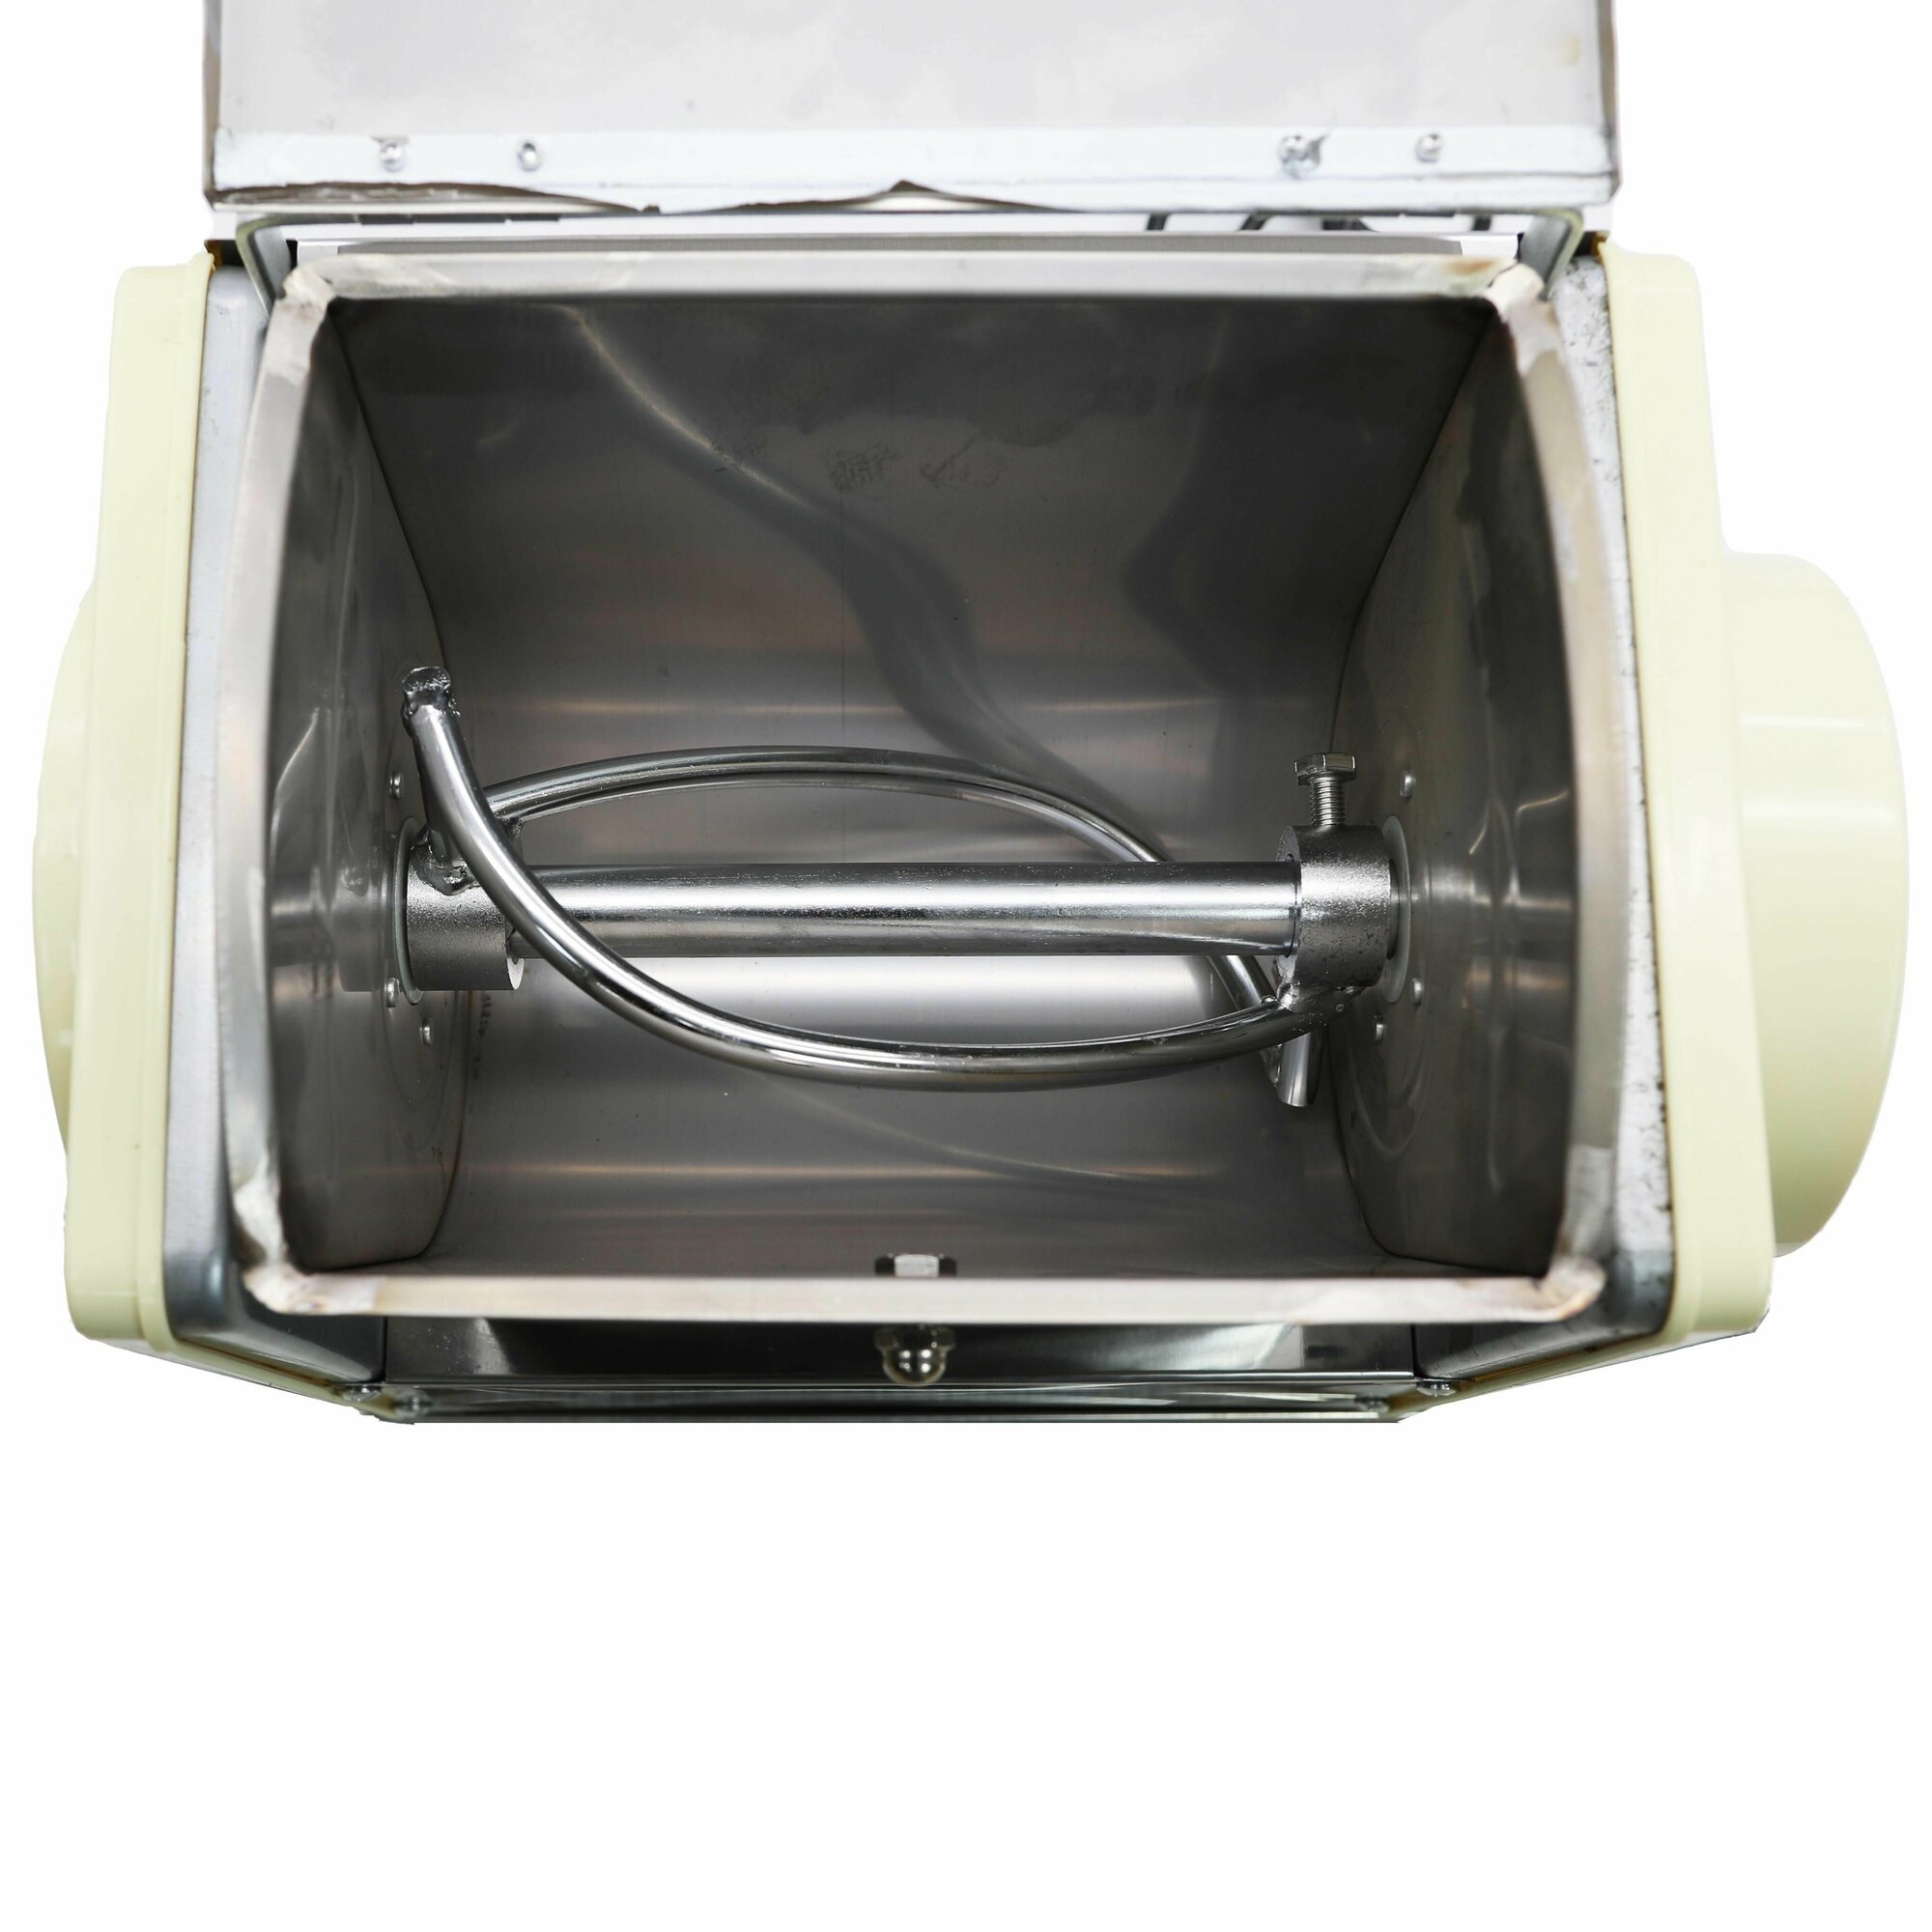 Тестомес горизонтальный XINXIN HSE5 для крутого теста пельменей и вареников, 0,55 кВт, 36 об/мин до 2 кг